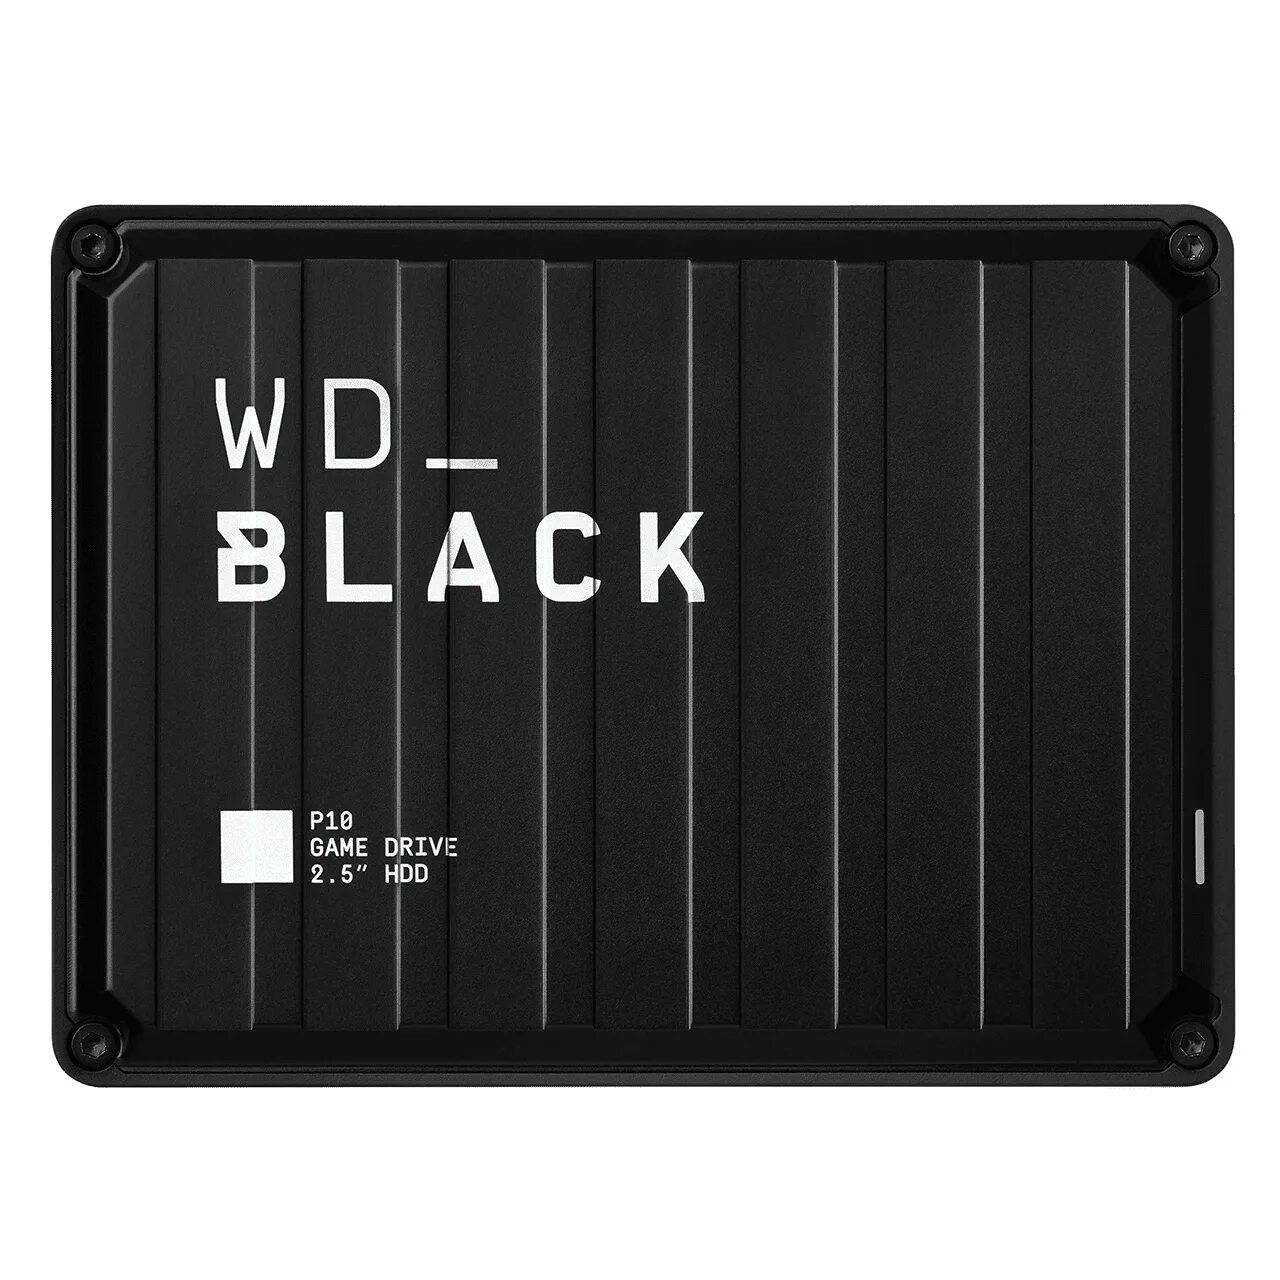 HDD WD Black 4tb. Wdba3s5000abk-WESN. WD_Black p50. Western Digital Black 1 ТБ. Wd gaming drive